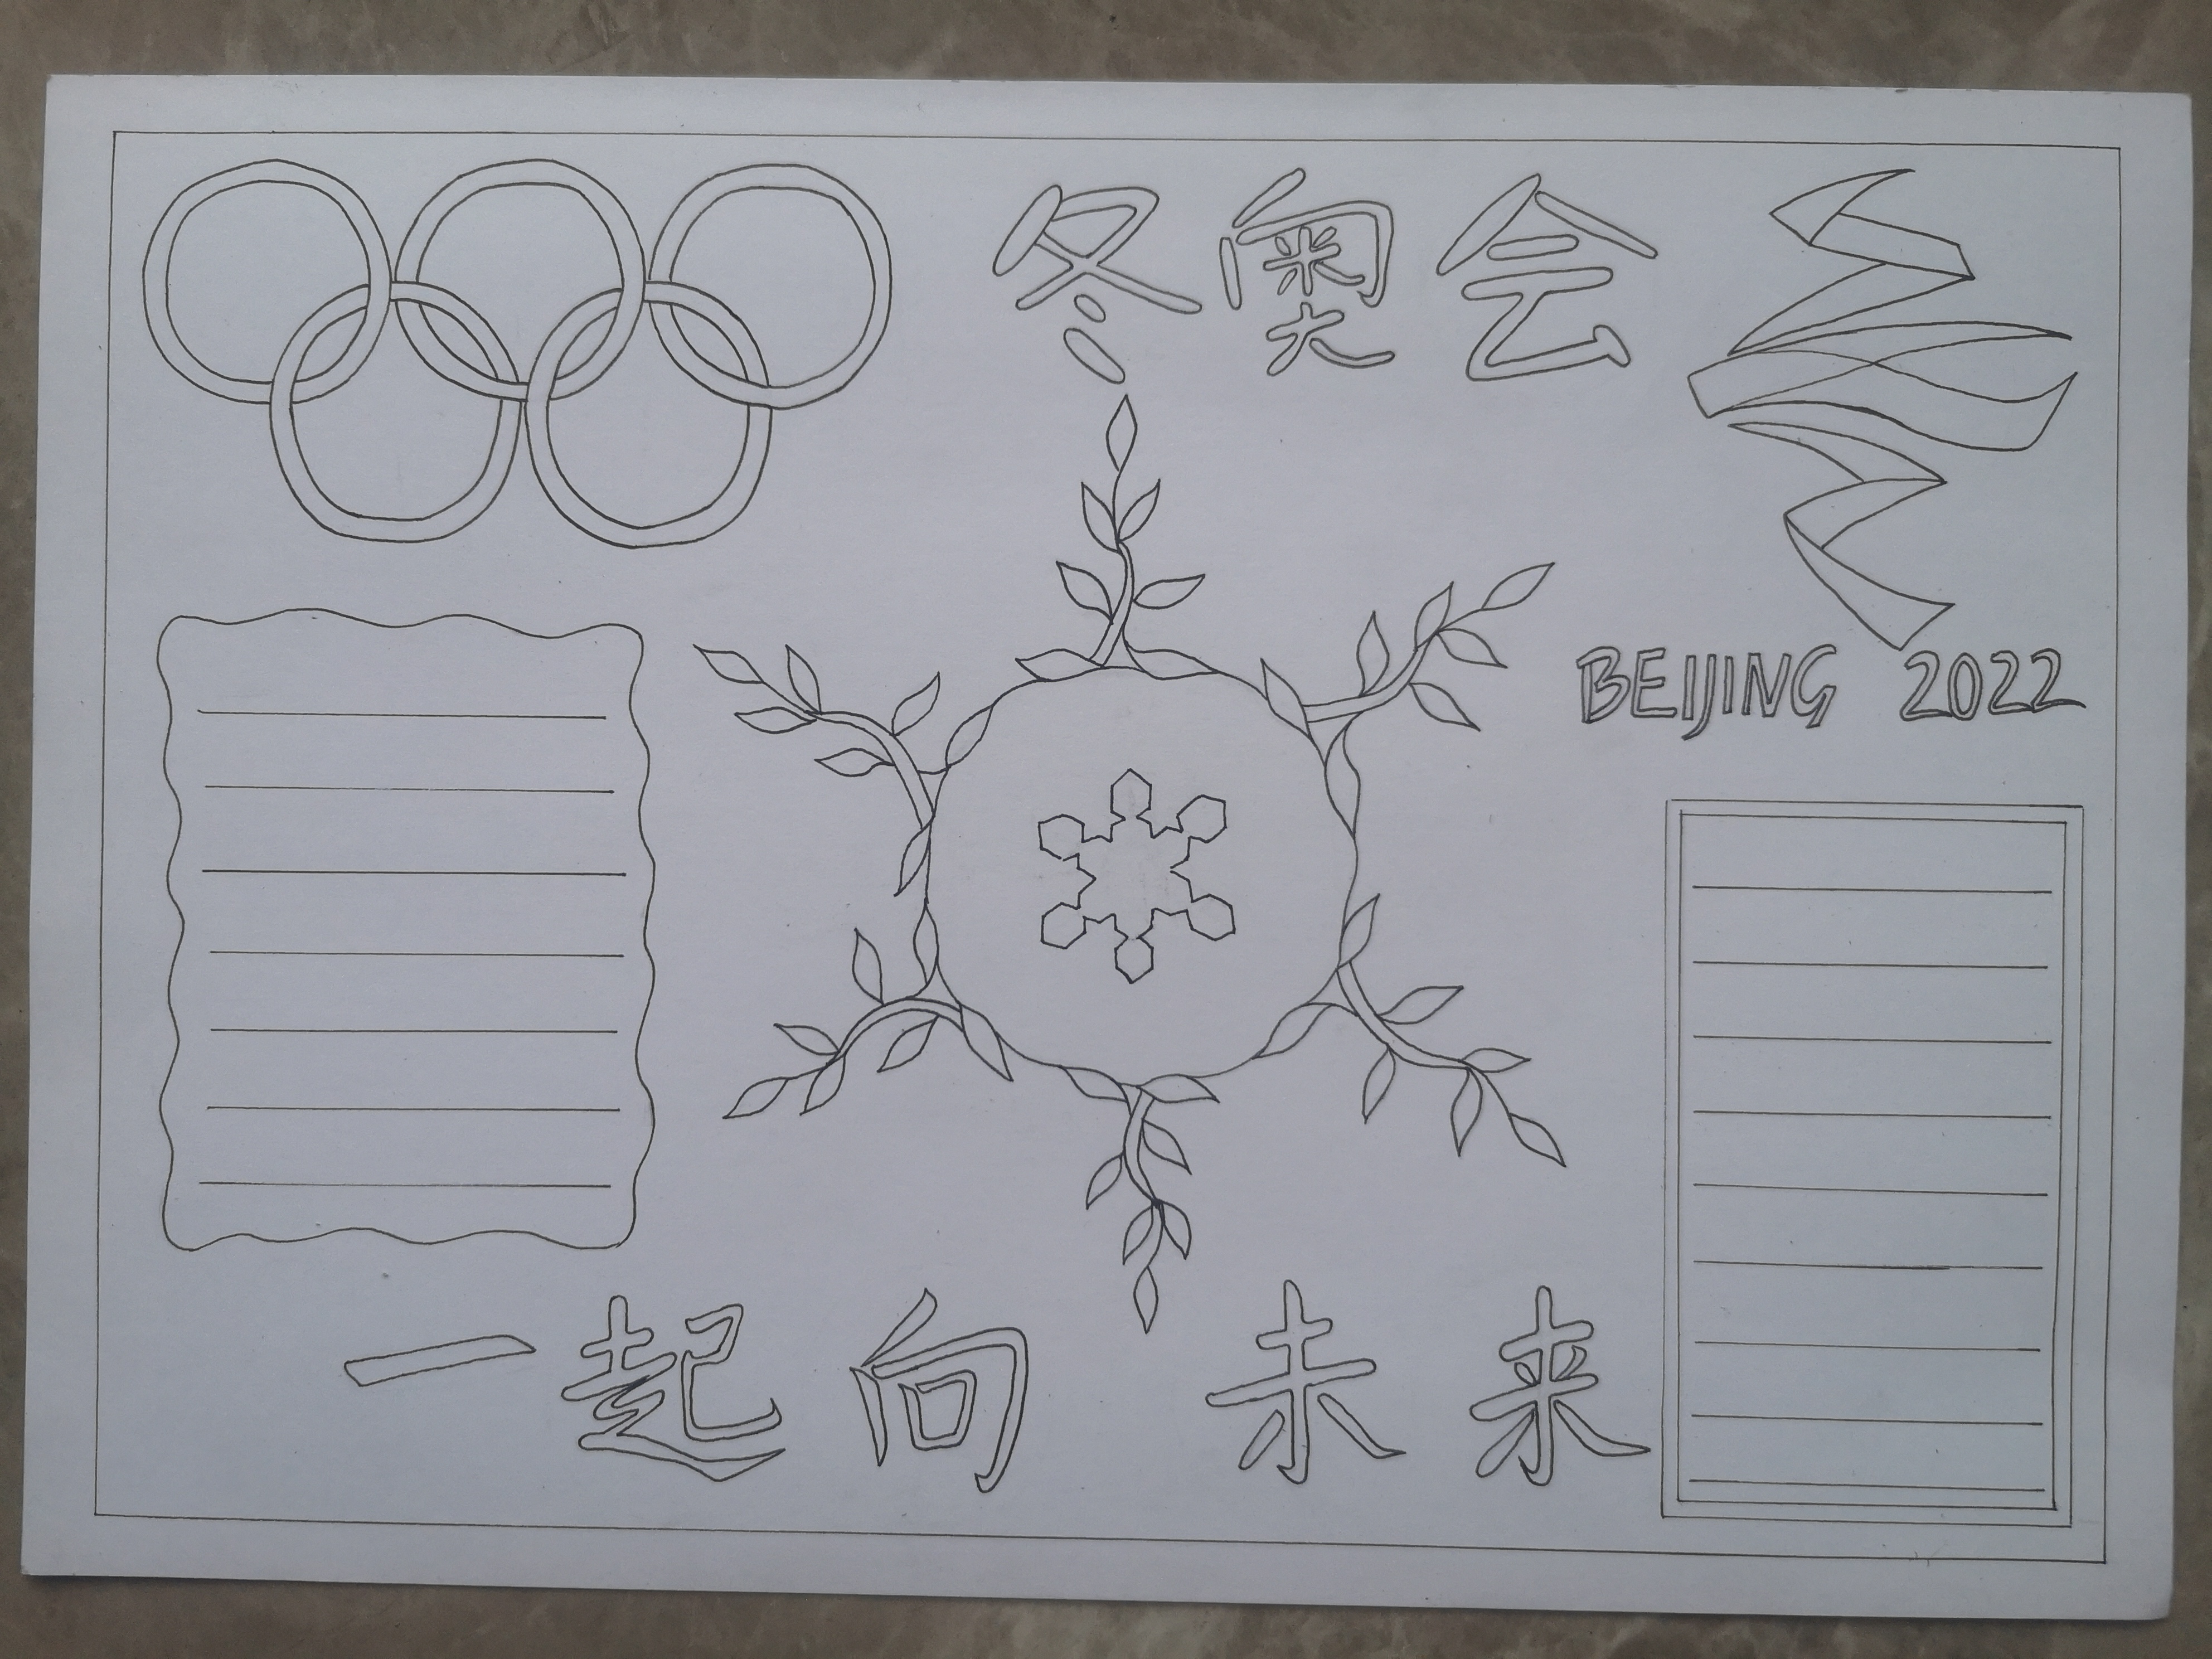 2022北京冬奥会手抄报合集来啦,快来给孩子收藏吧